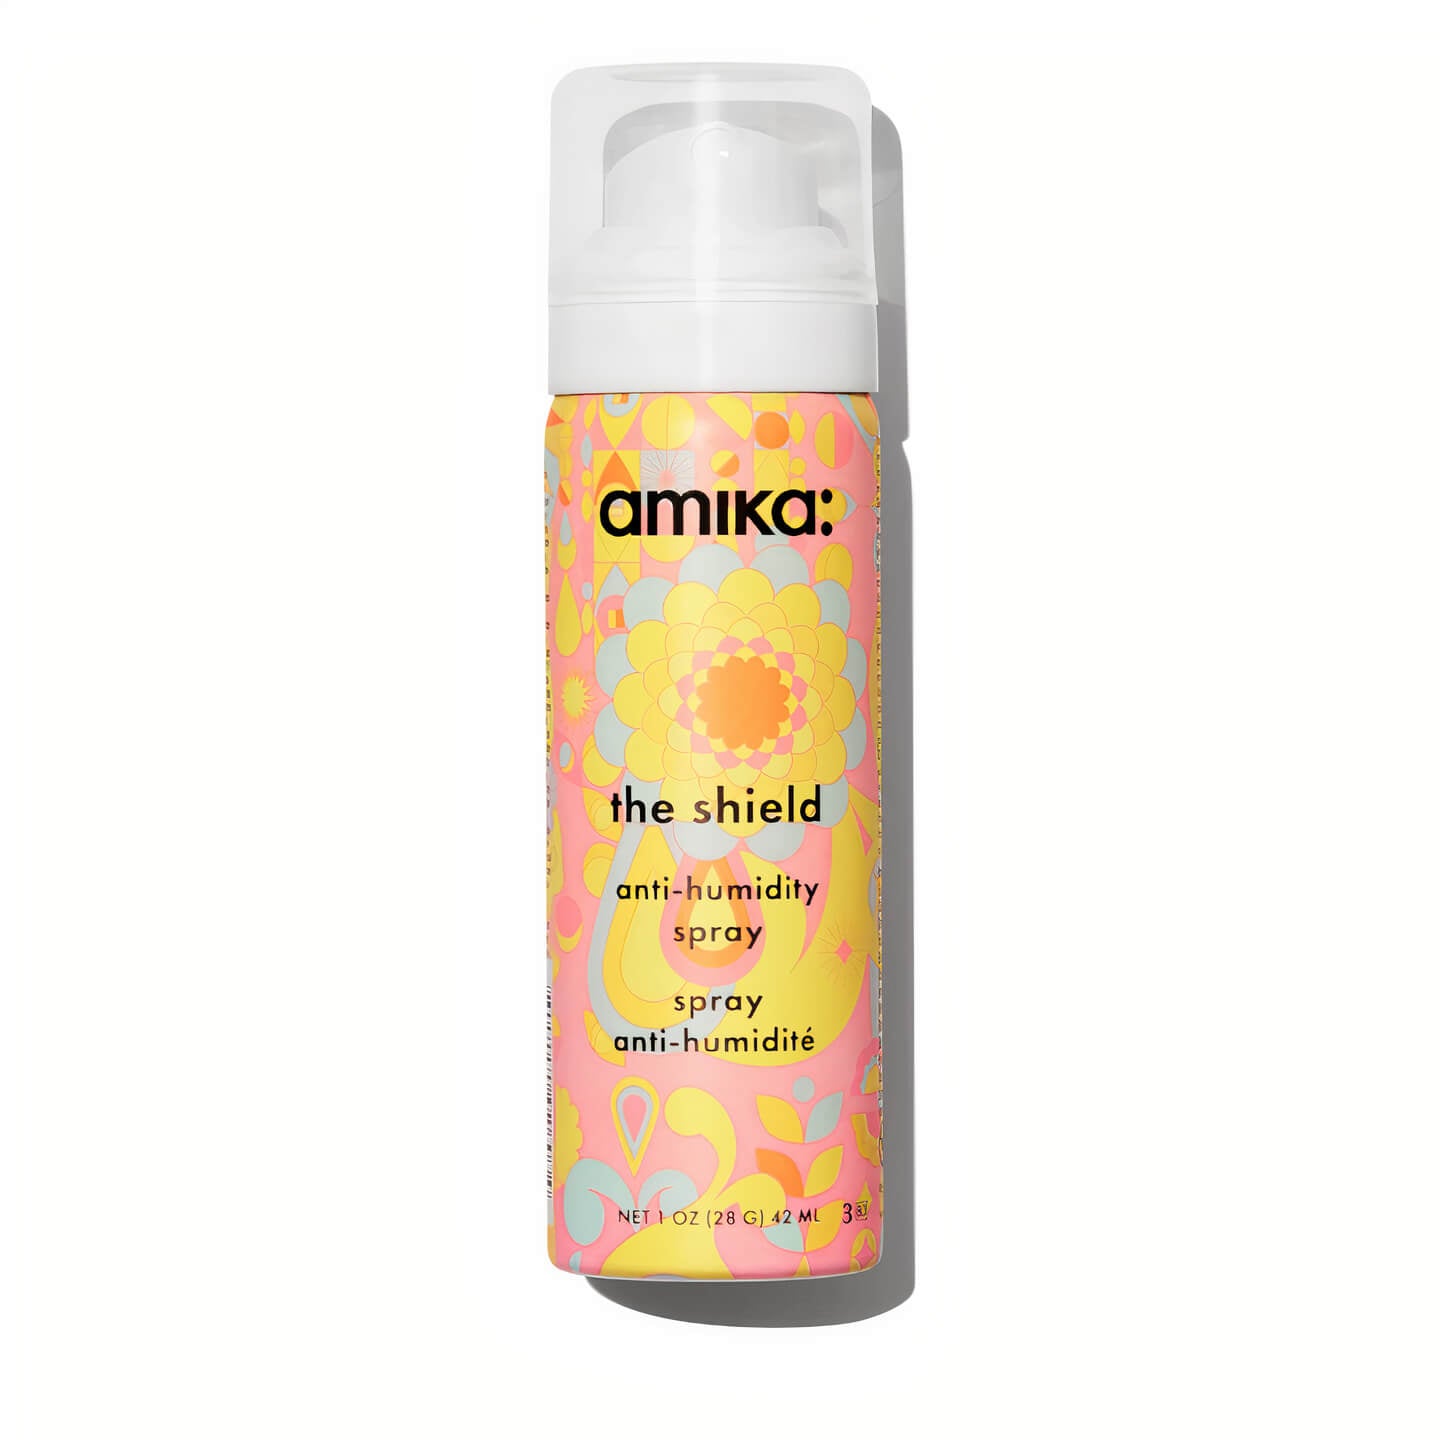 Amika: The Shield Anti-Humidity Spray